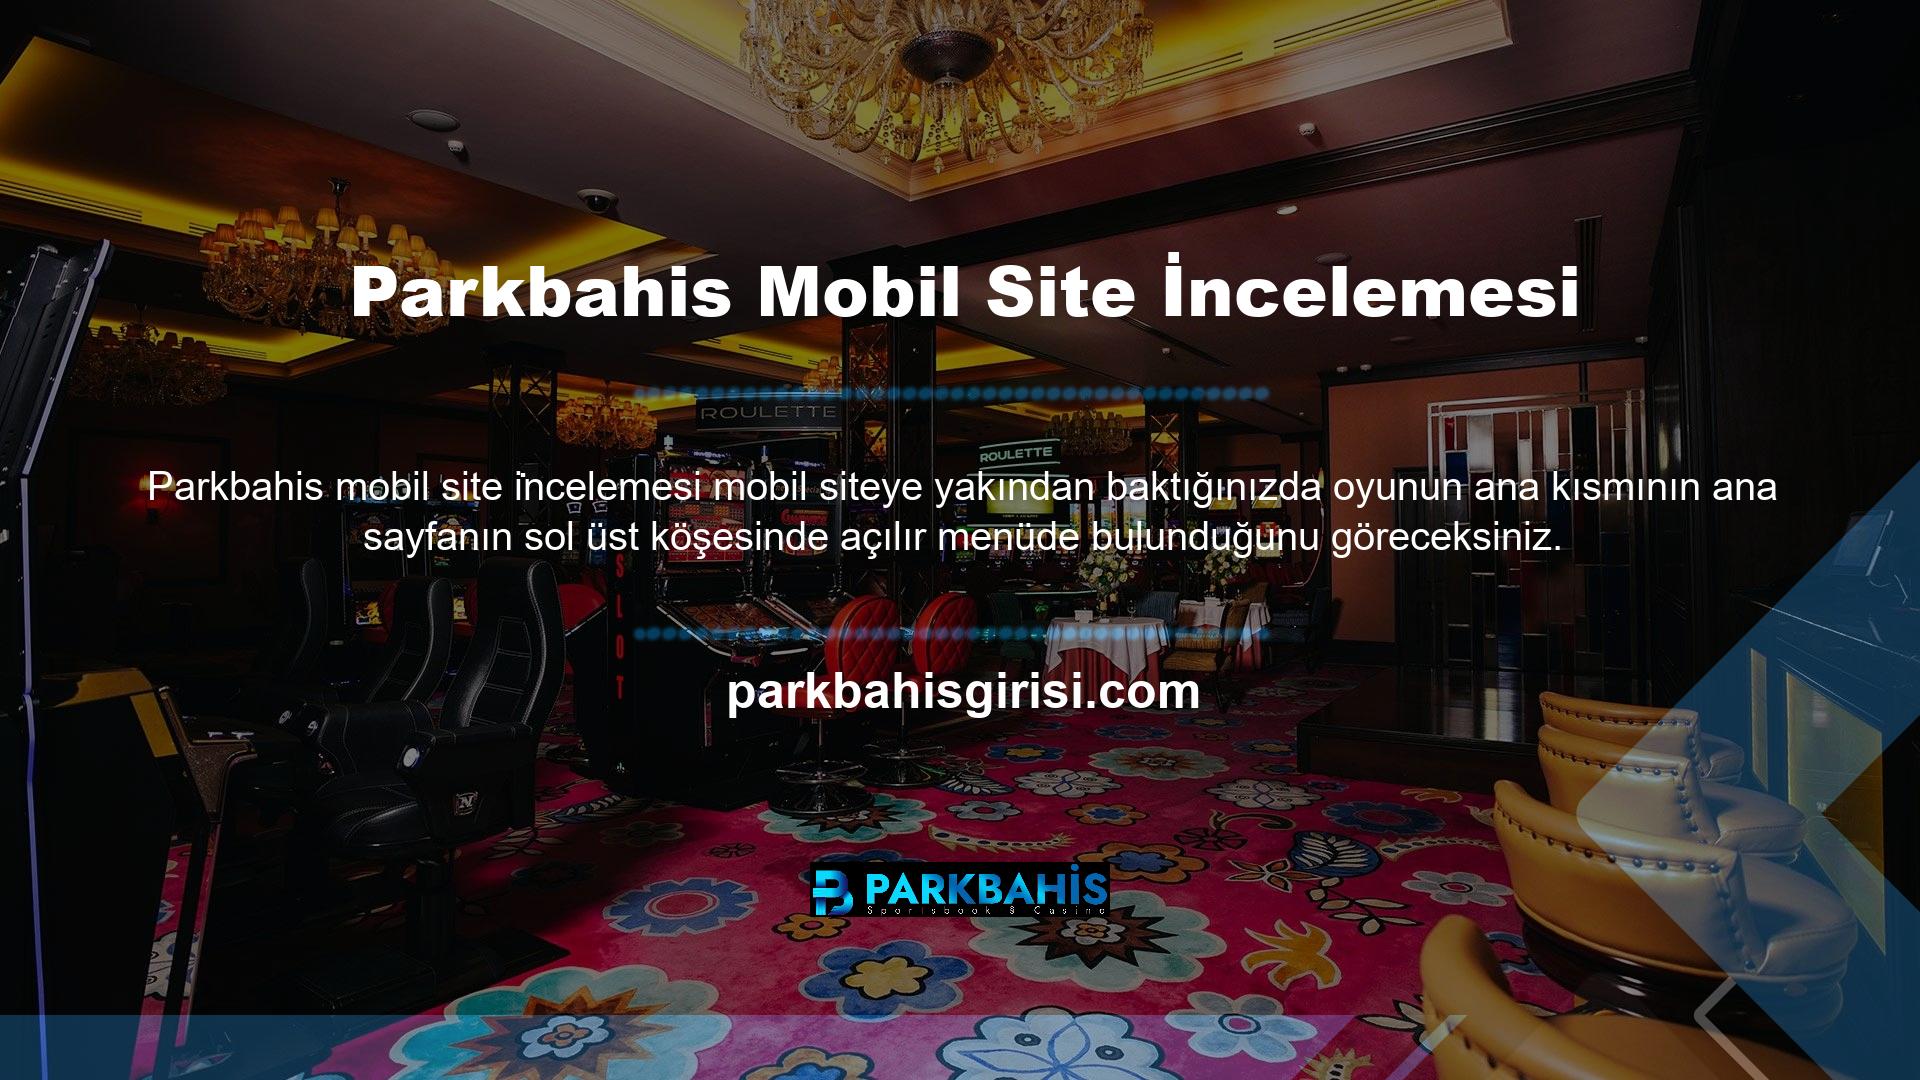 Parkbahis mobil web sitesinin ana sayfasının sağ üst köşesinde Türkçe, İngilizce, Almanca ve Fransızcayı destekleyen hızlı bir karşılaştırma çubuğu bulunmaktadır